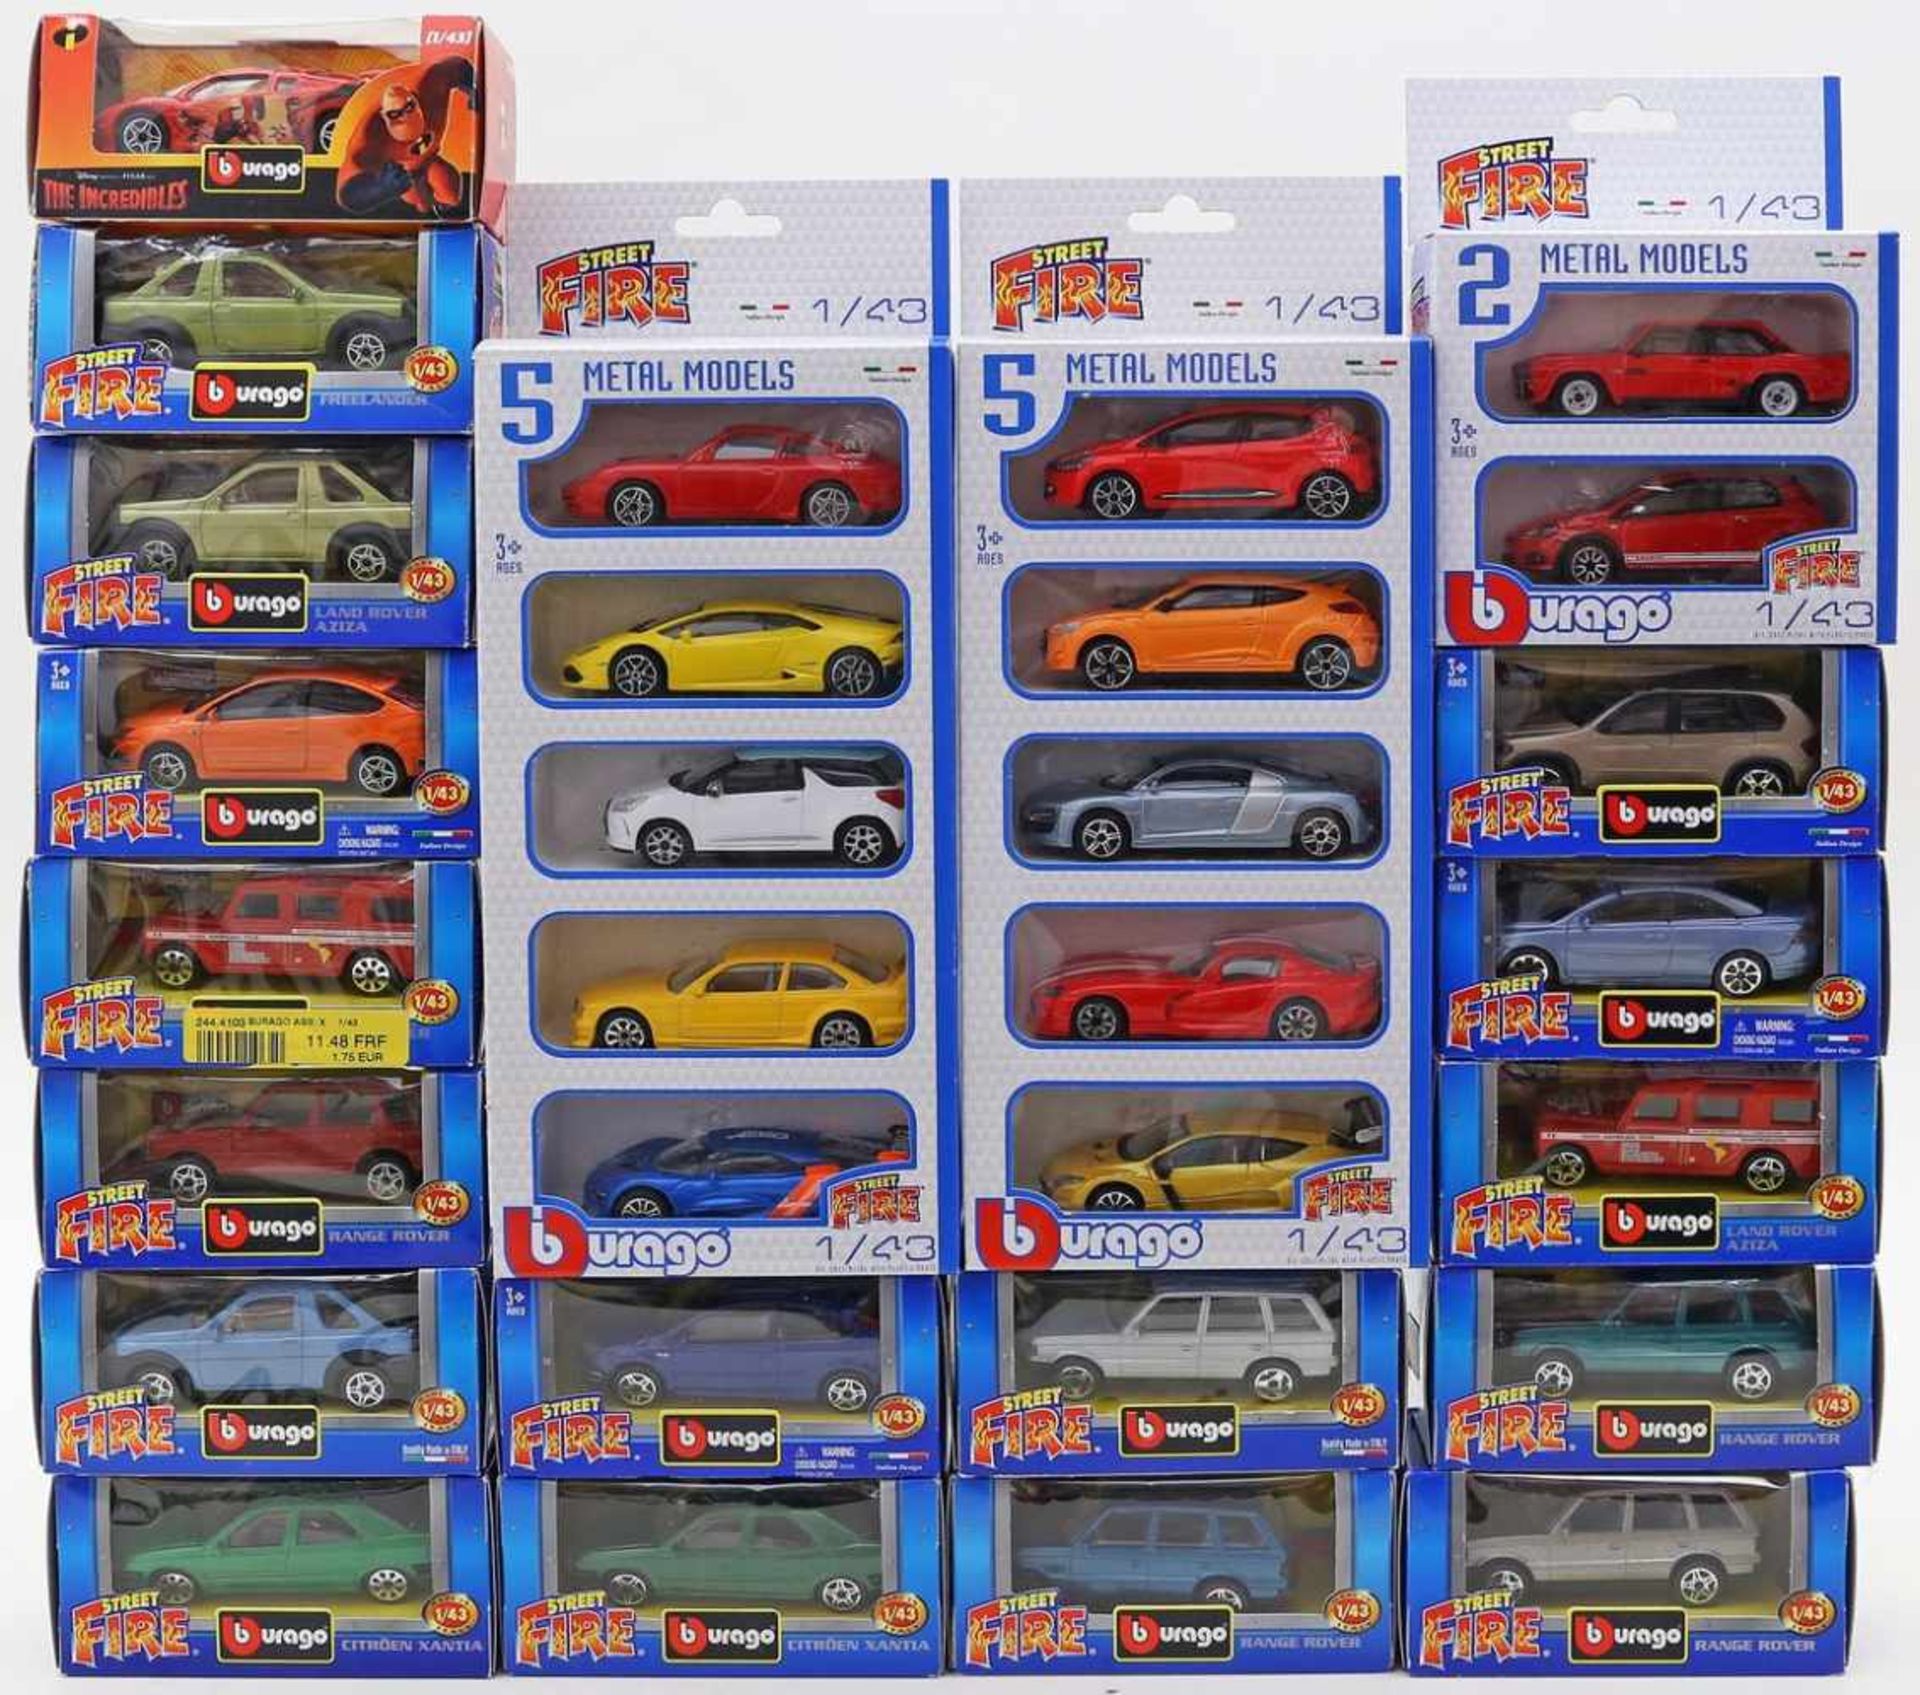 29 Spielzeugautos, Burago, 1:43.Verschiedene Modelle aus unterschiedlichen Serien. Je in